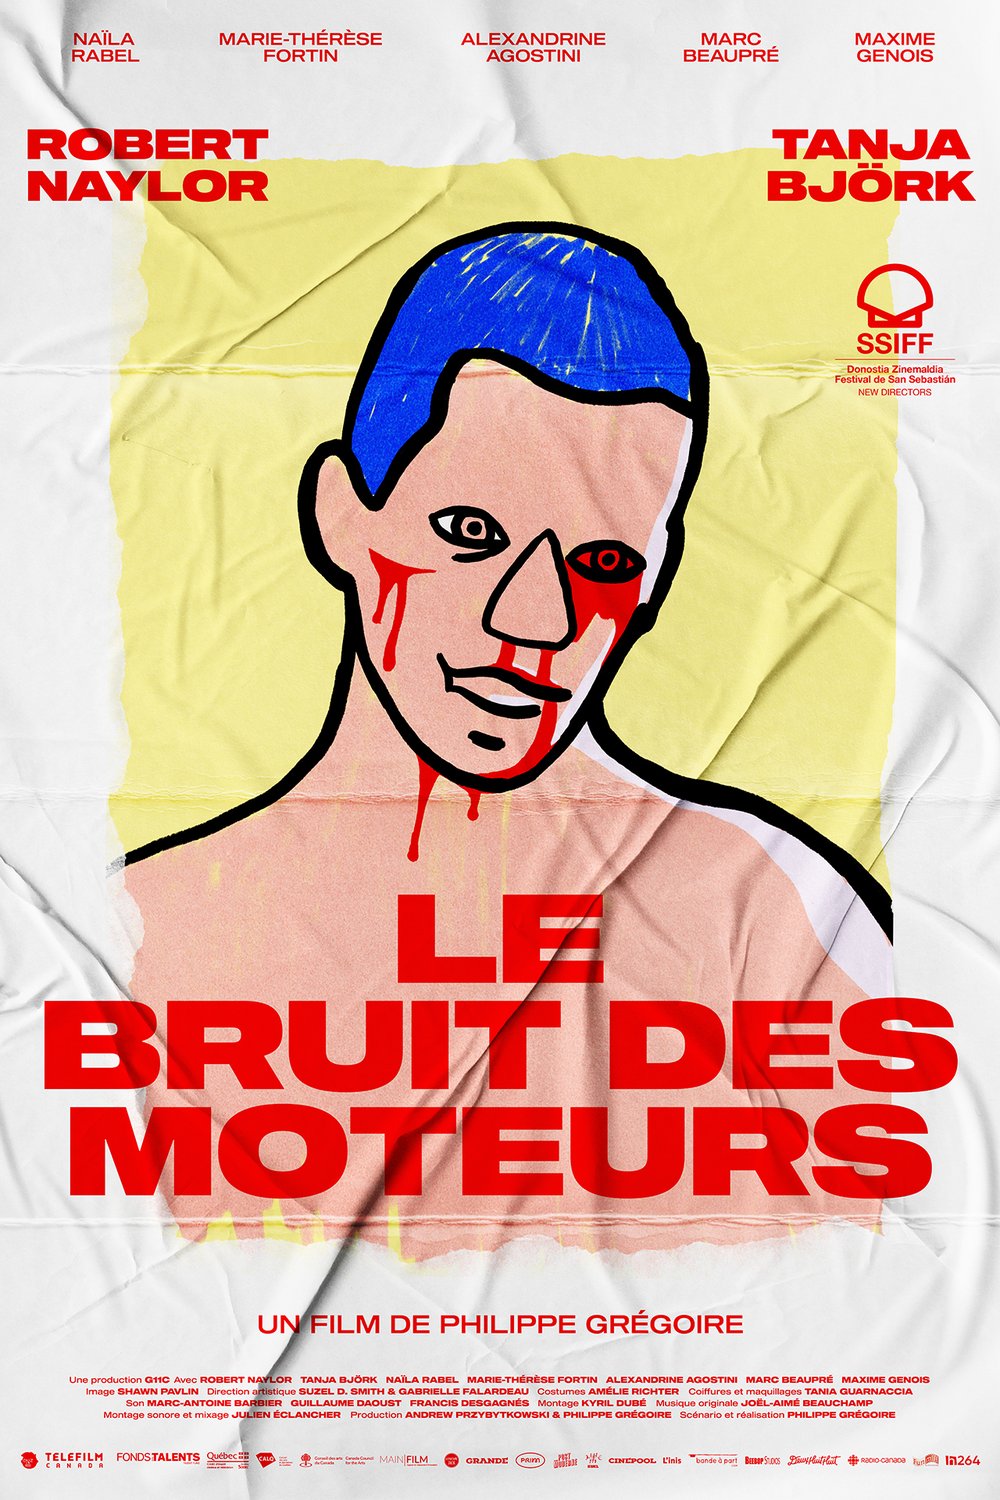 Poster of the movie Le bruit des moteurs